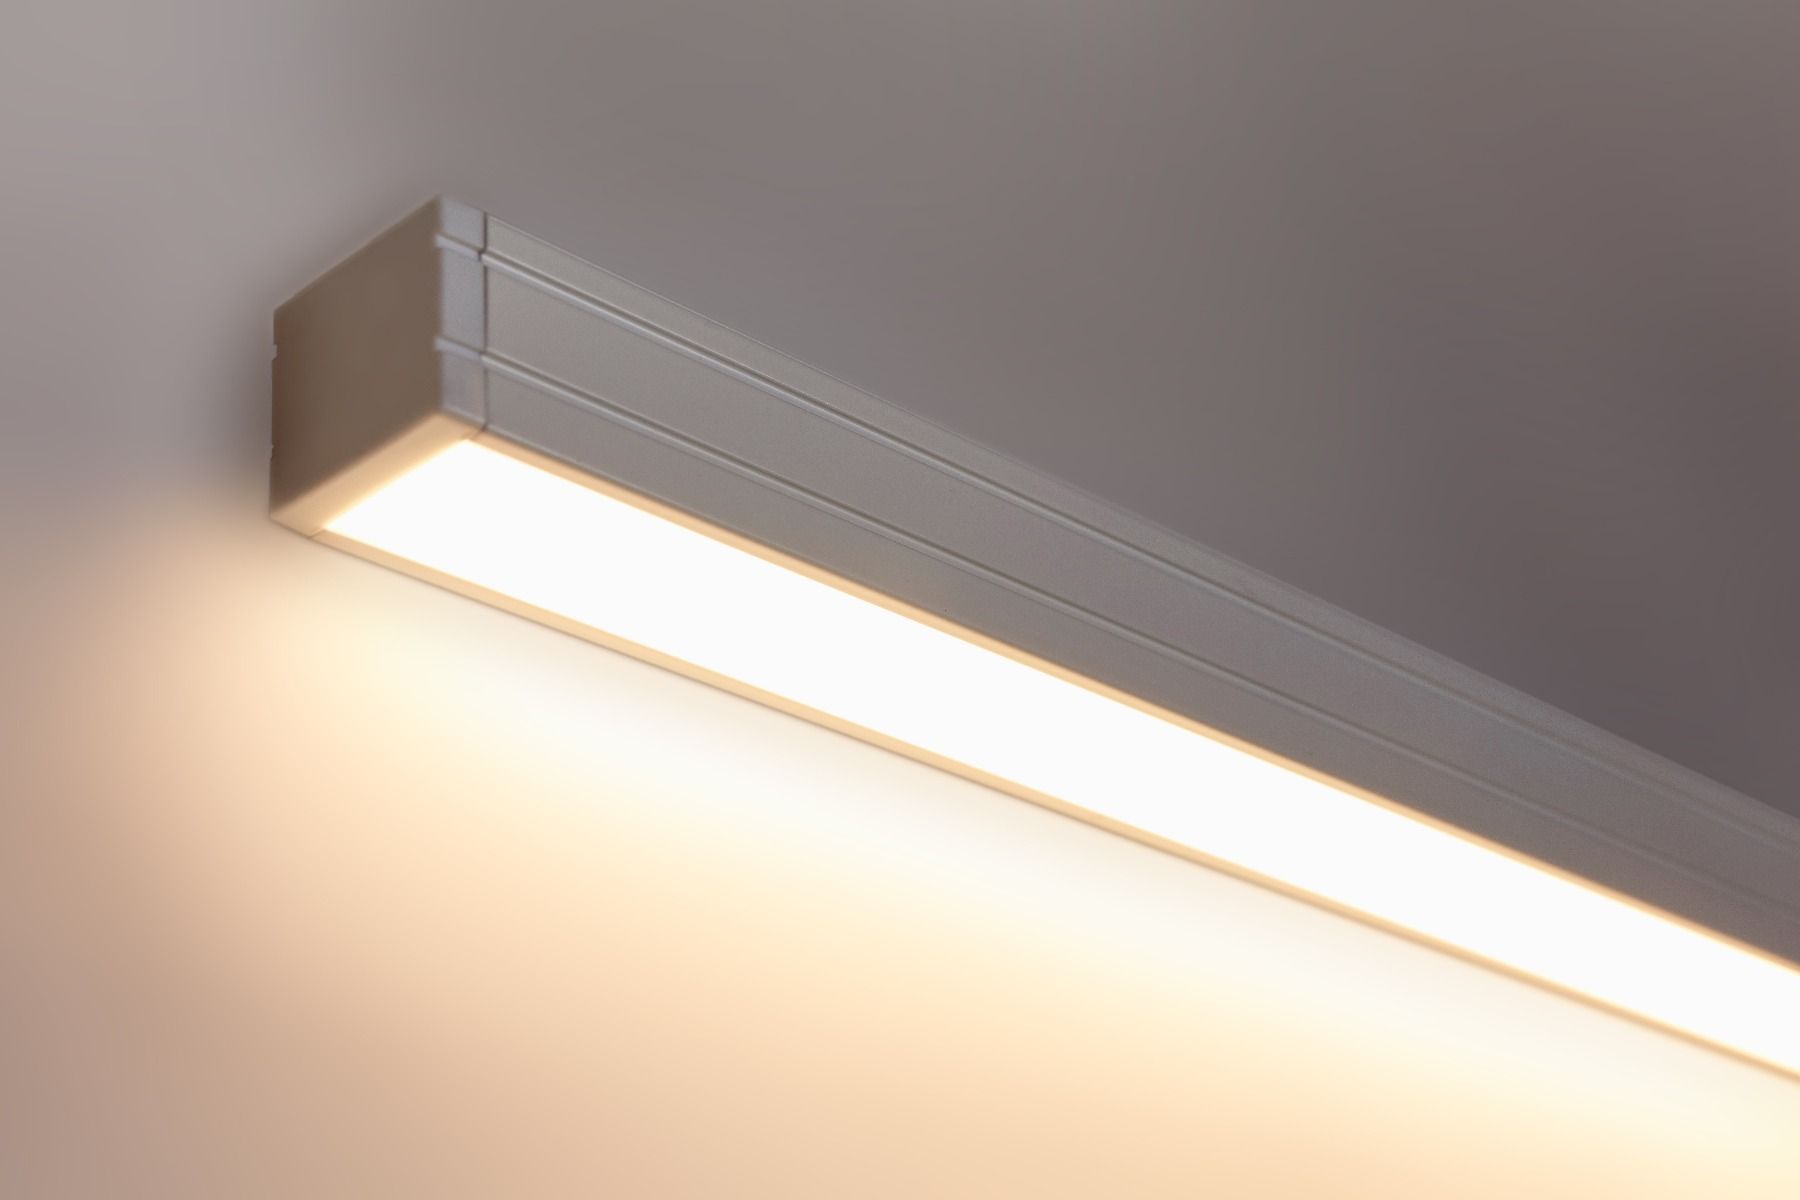 Alcon Lighting 14220 Architectural Led Linear 120v Light Bar For